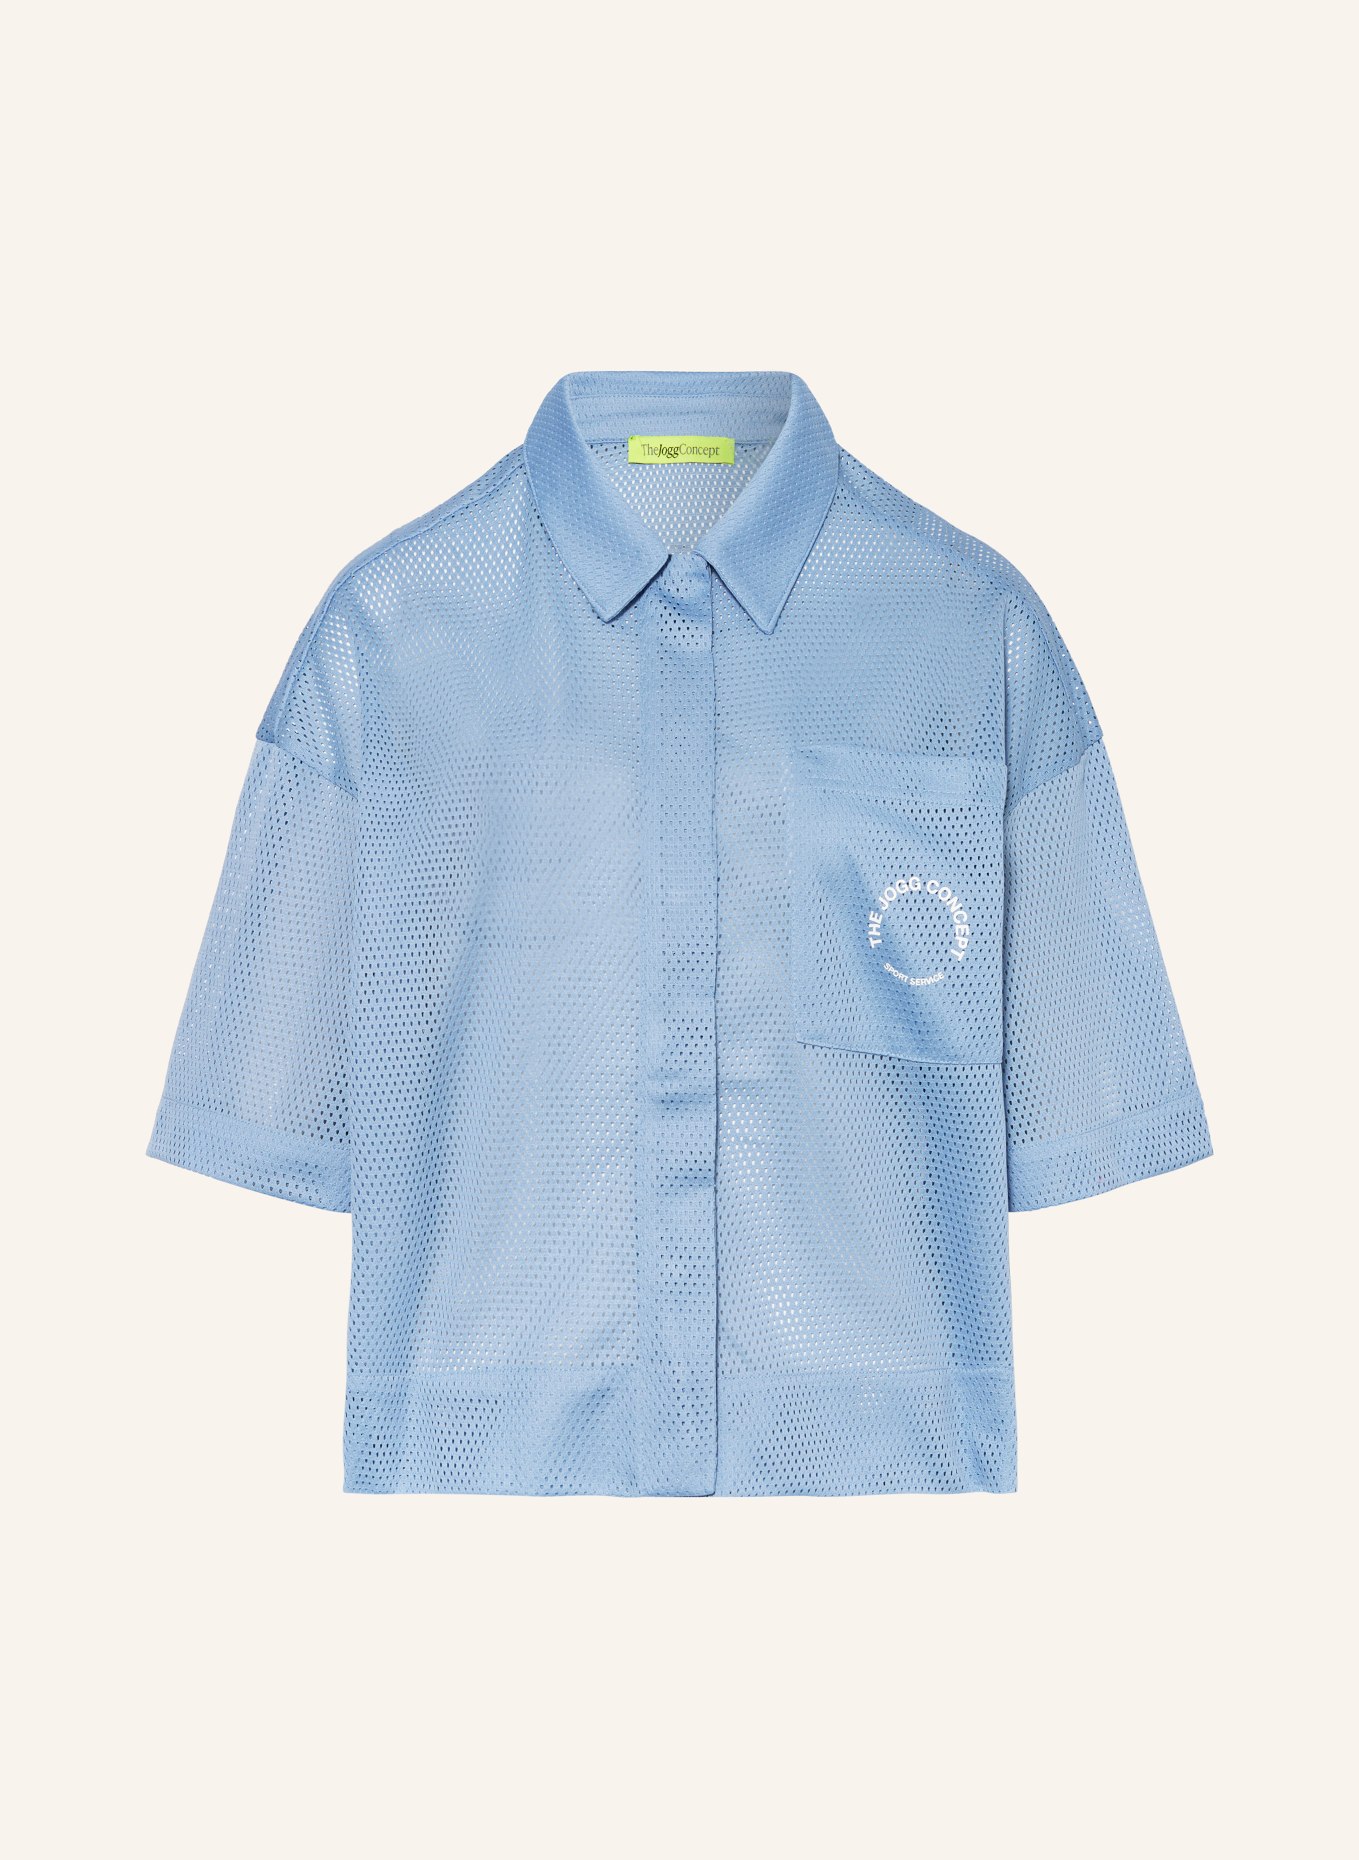 TheJoggConcept Shirt blouse JCTALLI, Color: BLUE (Image 1)